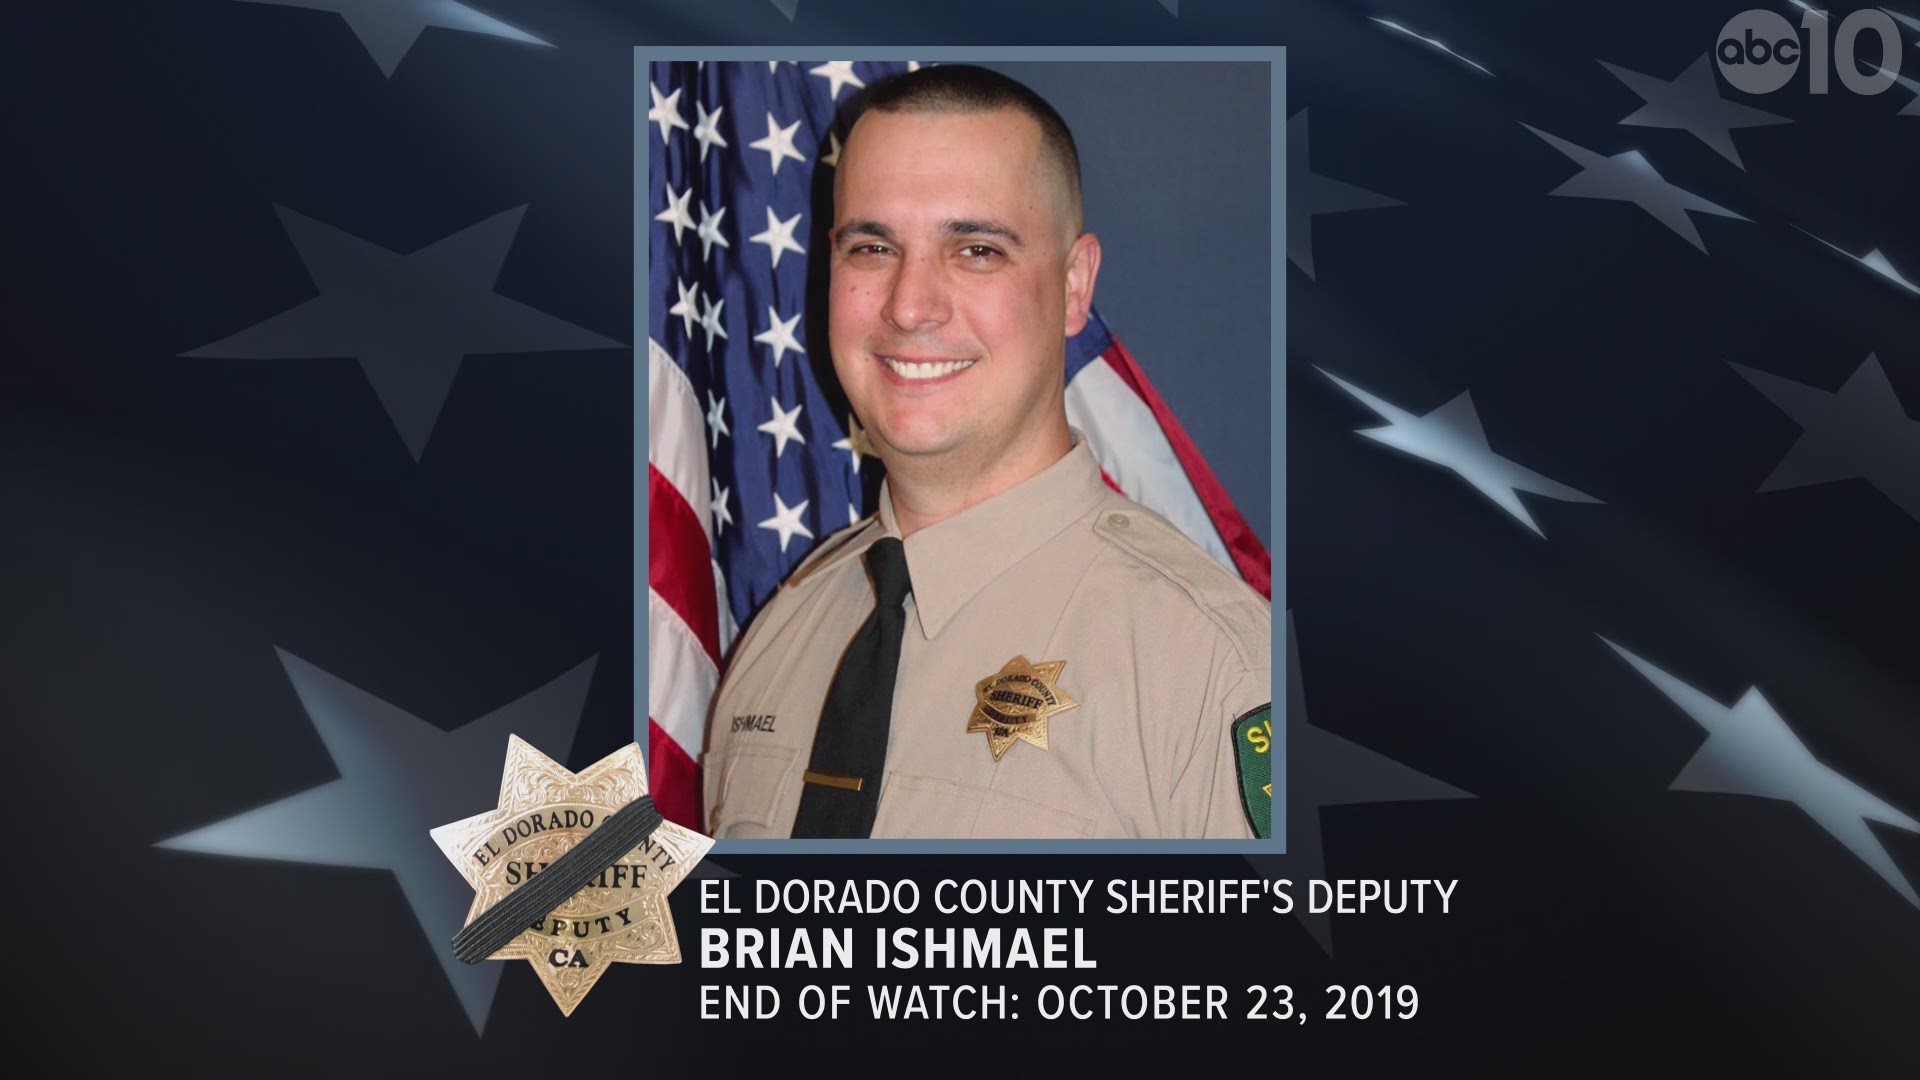 End of Watch: El Dorado County Sheriff's Deputy Brian Ishmael. Deputy Ishmael was shot and killed in the line of duty.